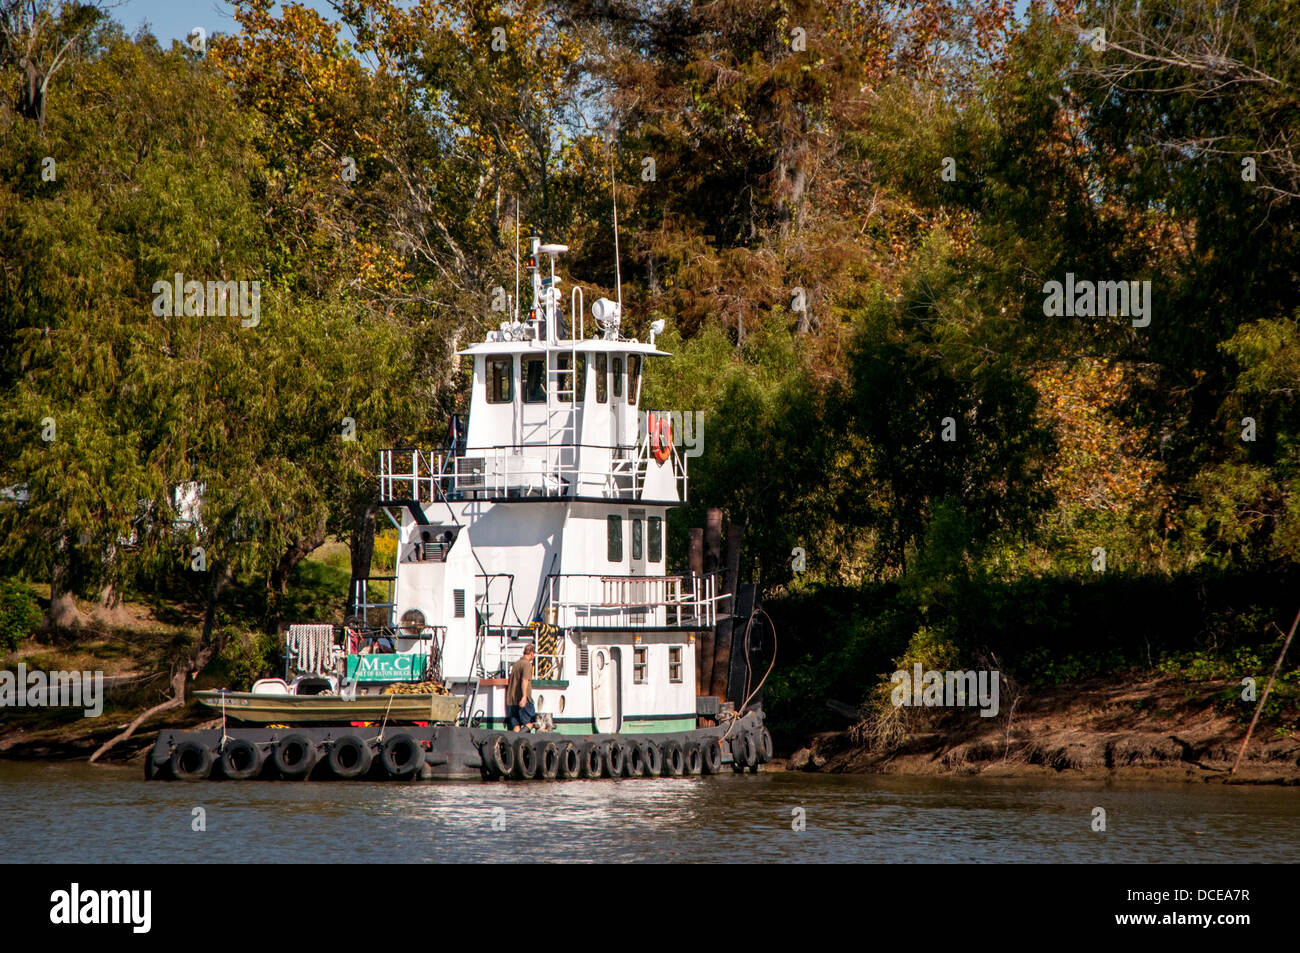 USA, Louisiana, Atchafalaya Basin, tug boat 'Mr. C' of Baton Rouge tied up on a bayou. Stock Photo